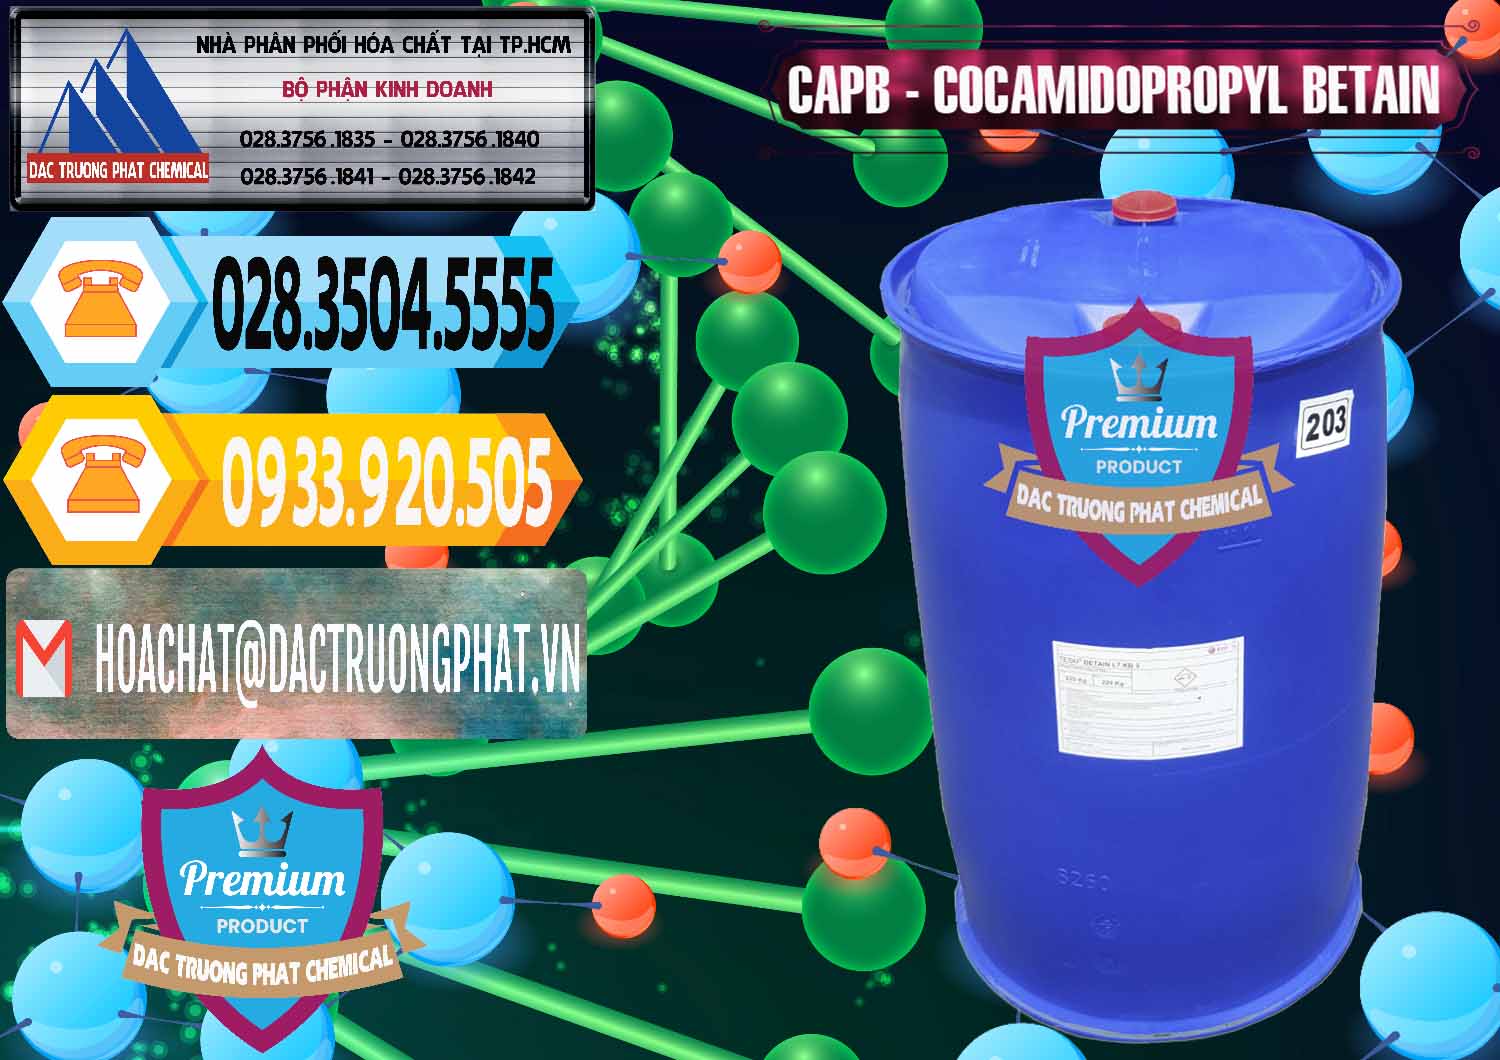 Đơn vị chuyên cung ứng và bán Cocamidopropyl Betaine - CAPB Tego Indonesia - 0327 - Đơn vị phân phối và bán hóa chất tại TP.HCM - hoachattayrua.net